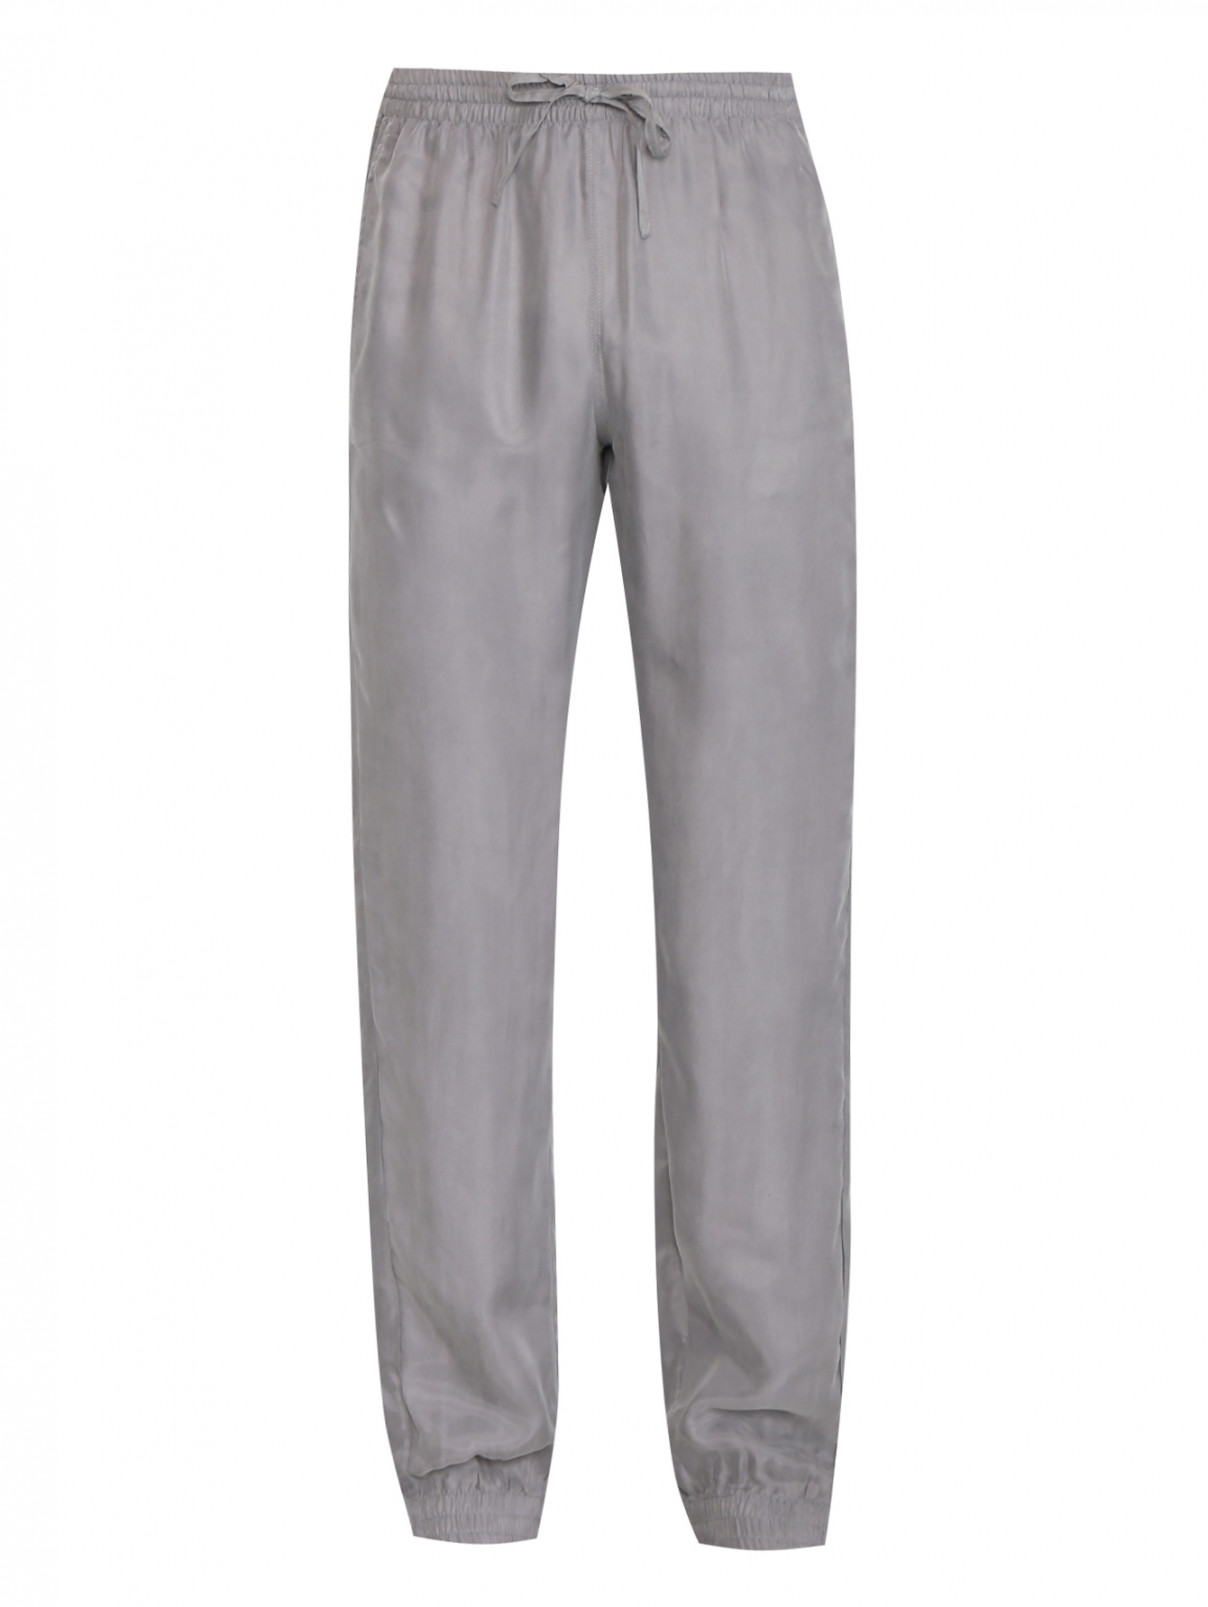 Пижамные штаны на резинке с карманами Nero Perla  –  Общий вид  – Цвет:  Серый